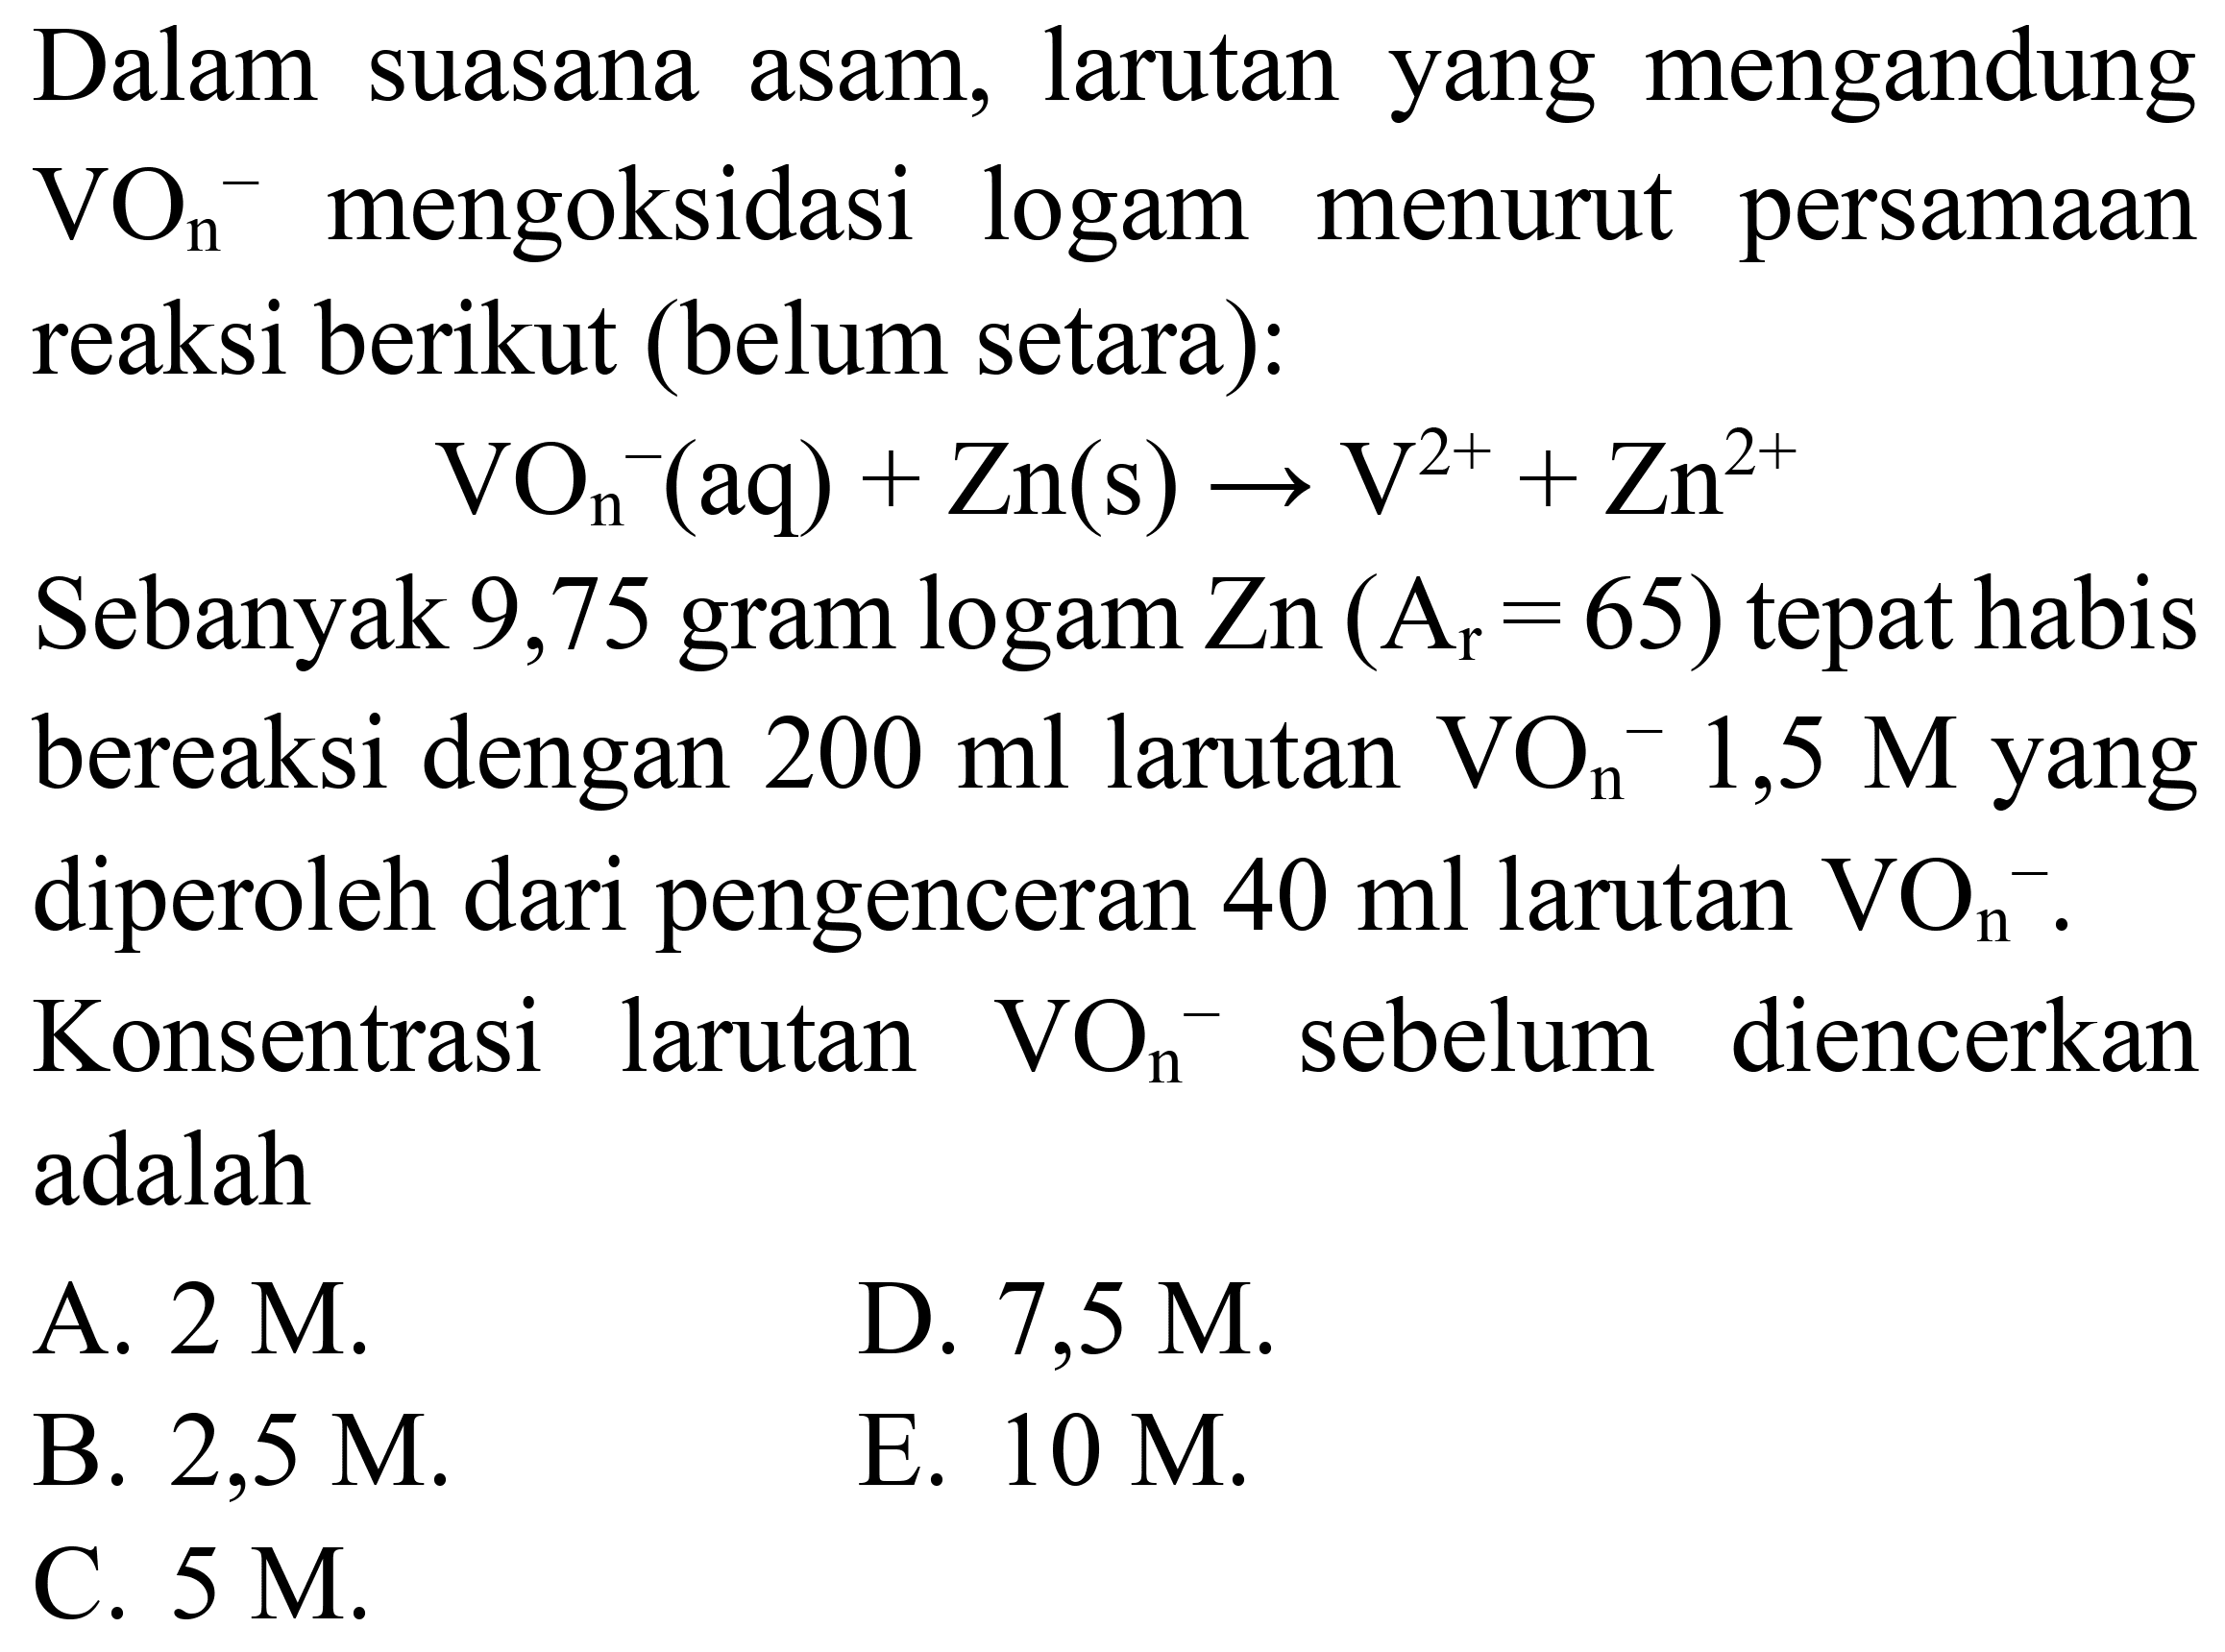 Dalam suasana asam, larutan yang mengandung  VO_(n)/( )^(-) mengoksidasi logam menurut persamaan reaksi berikut (belum setara):

VO_(n)/( )^(-)(aq)+Zn(s) -> V^(2+)+Zn^(2+)

Sebanyak 9,75 gram logam  Zn(A_(r)=65)  tepat habis bereaksi dengan  200 ml  larutan  VO_(n)^(-) 1,5 M  yang diperoleh dari pengenceran  40 ml  larutan  VO_(n)/( )^(-) . Konsentrasi larutan  VO_(n)^(-) sebelum diencerkan adalah
A.  2 M .
D.  7,5 M .
B.  2,5 M 
E.  10 M .
C.  5 M .